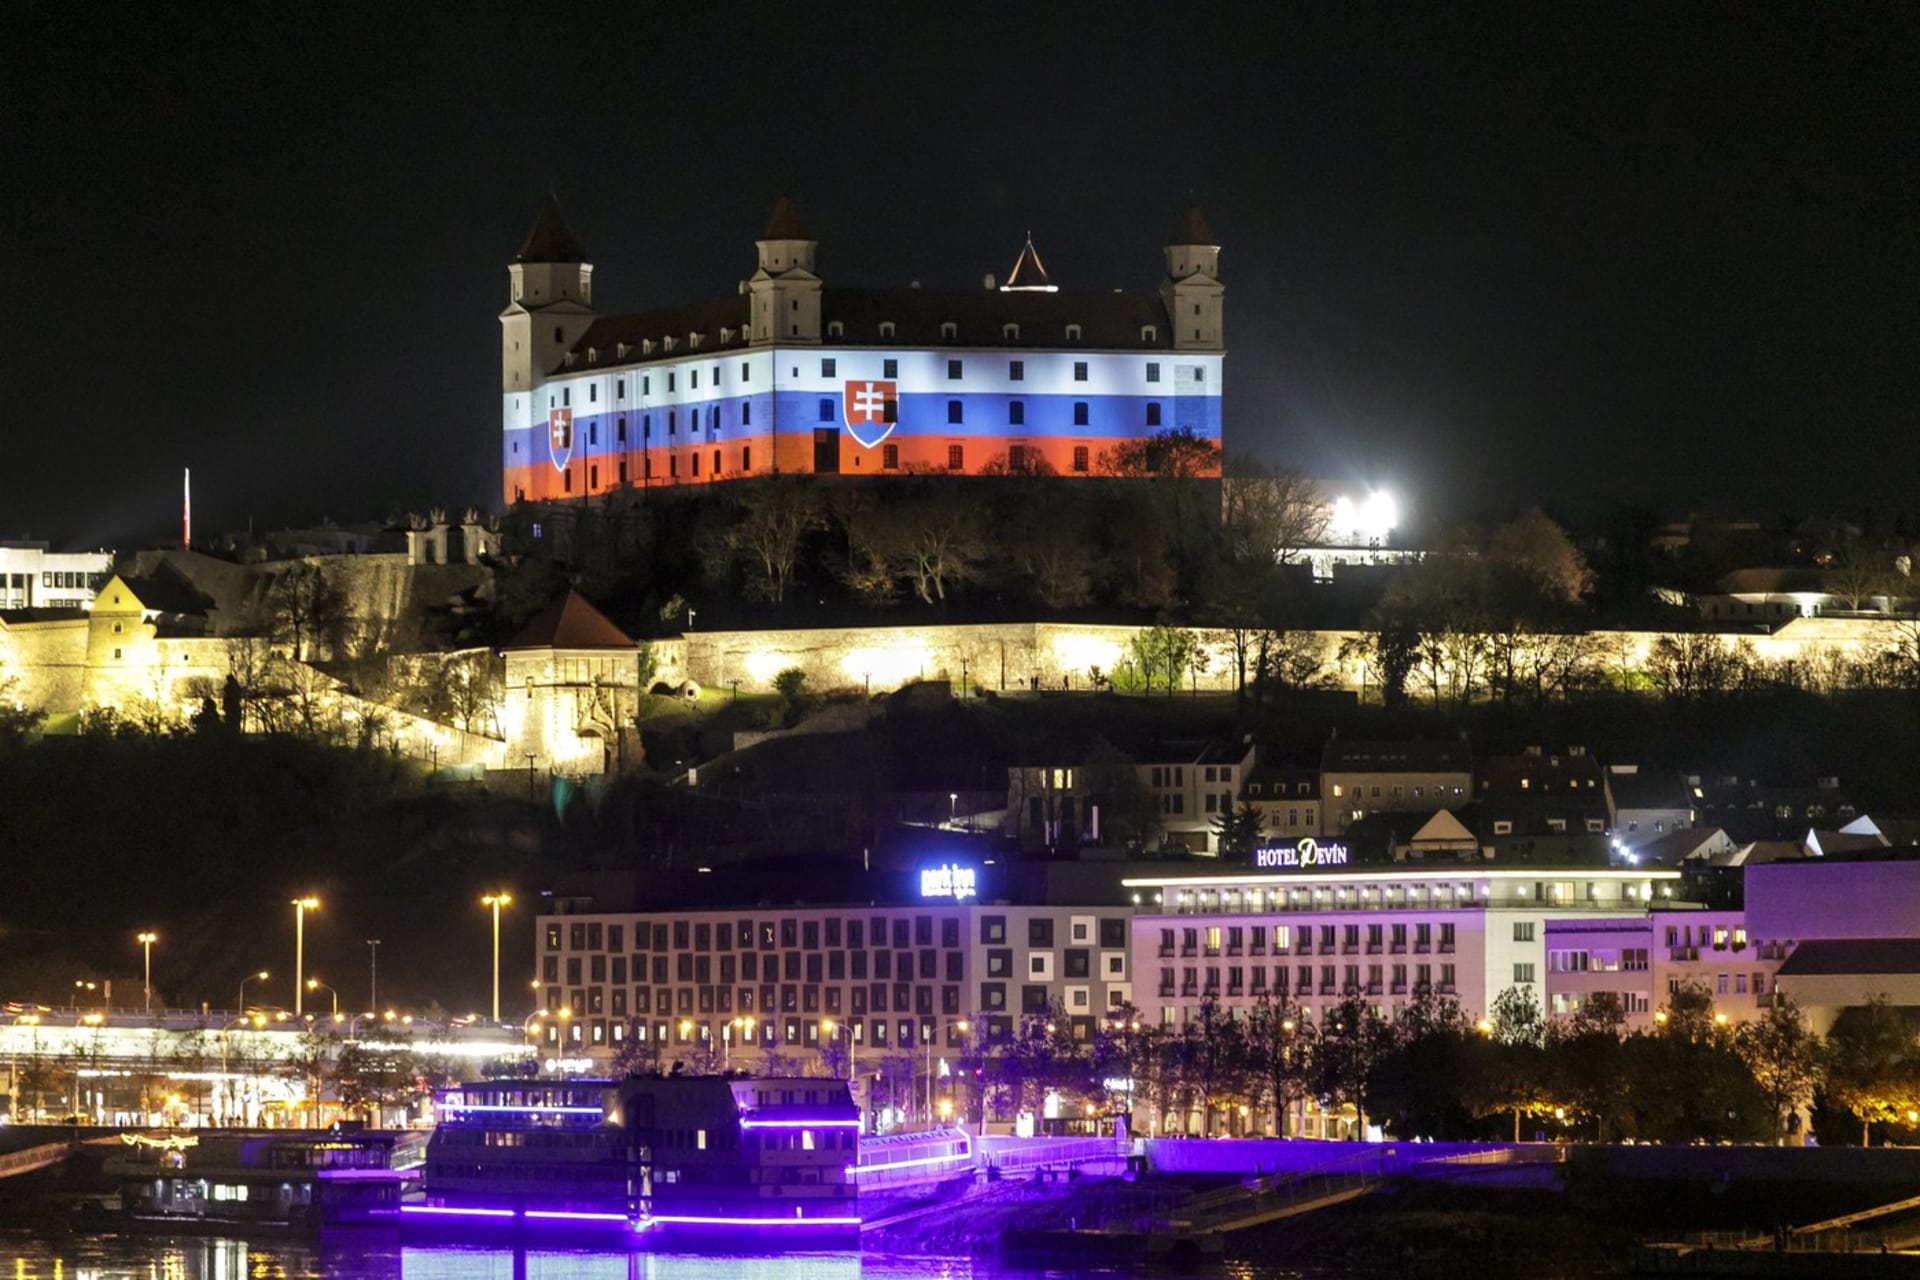 Bratislavský hrad slavnostně nasvícený při příležitosti oslav Sametové revoluce 17. listopadu 2020